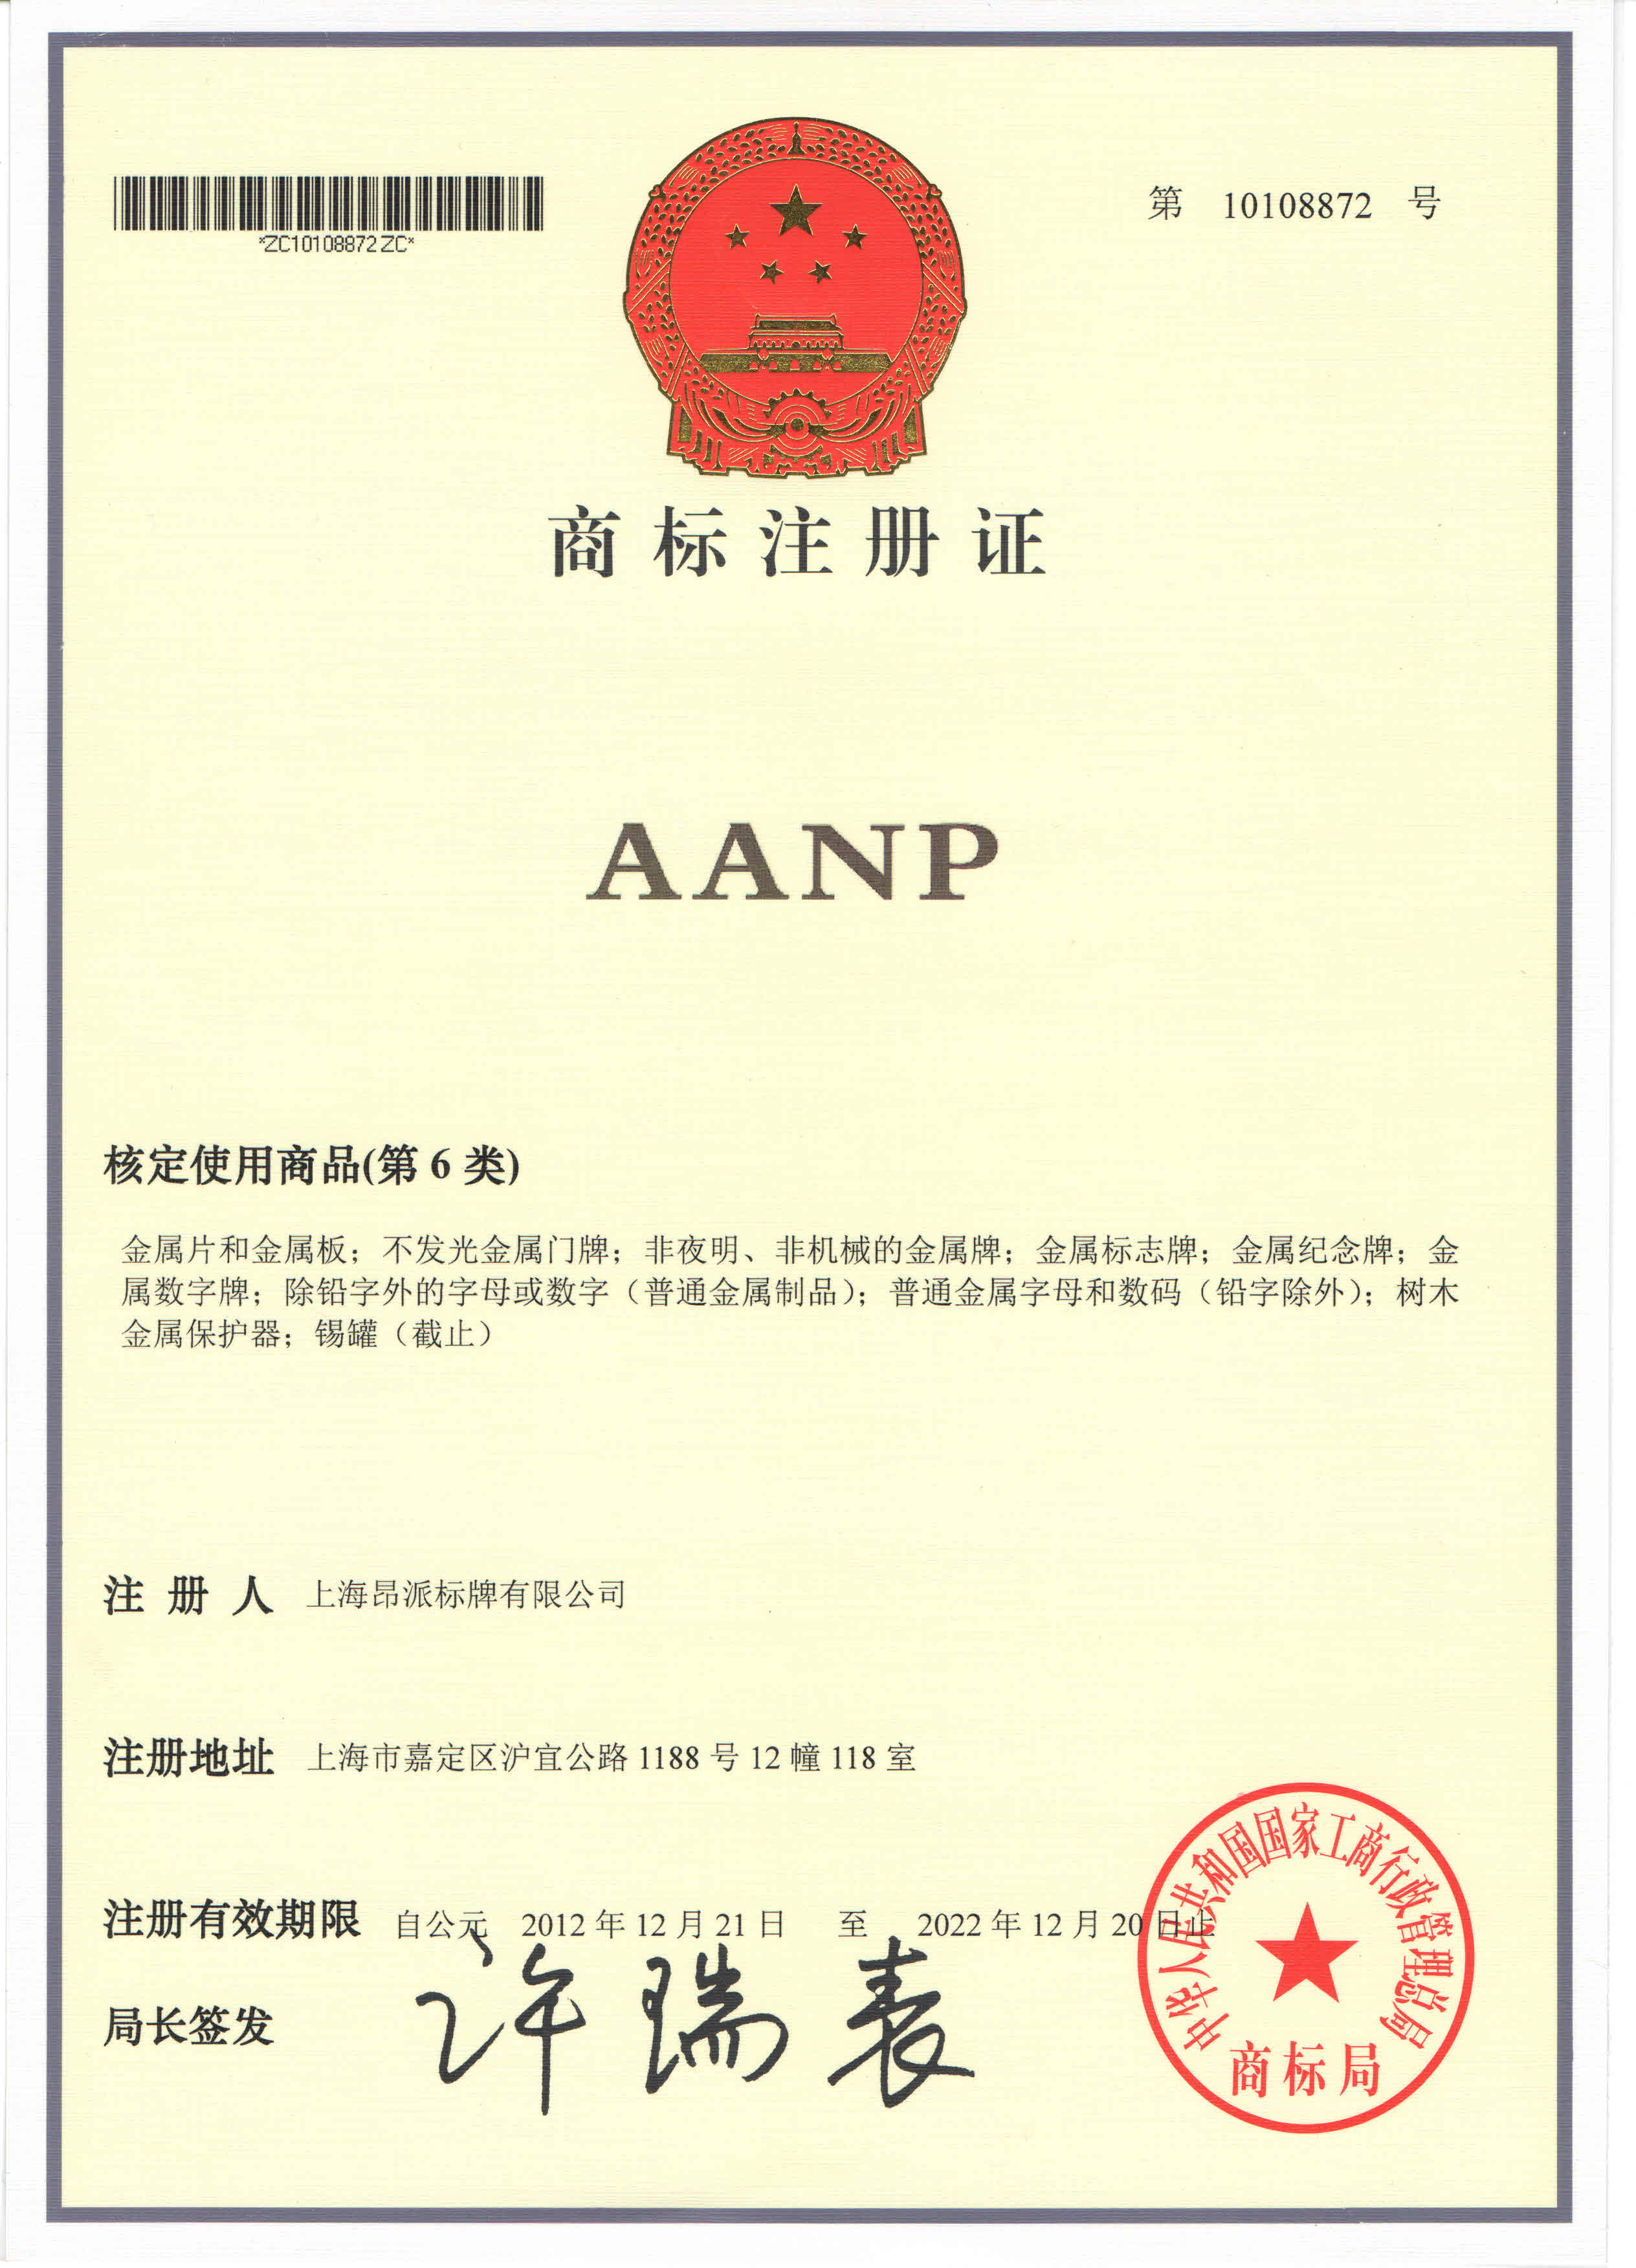 AANP商標